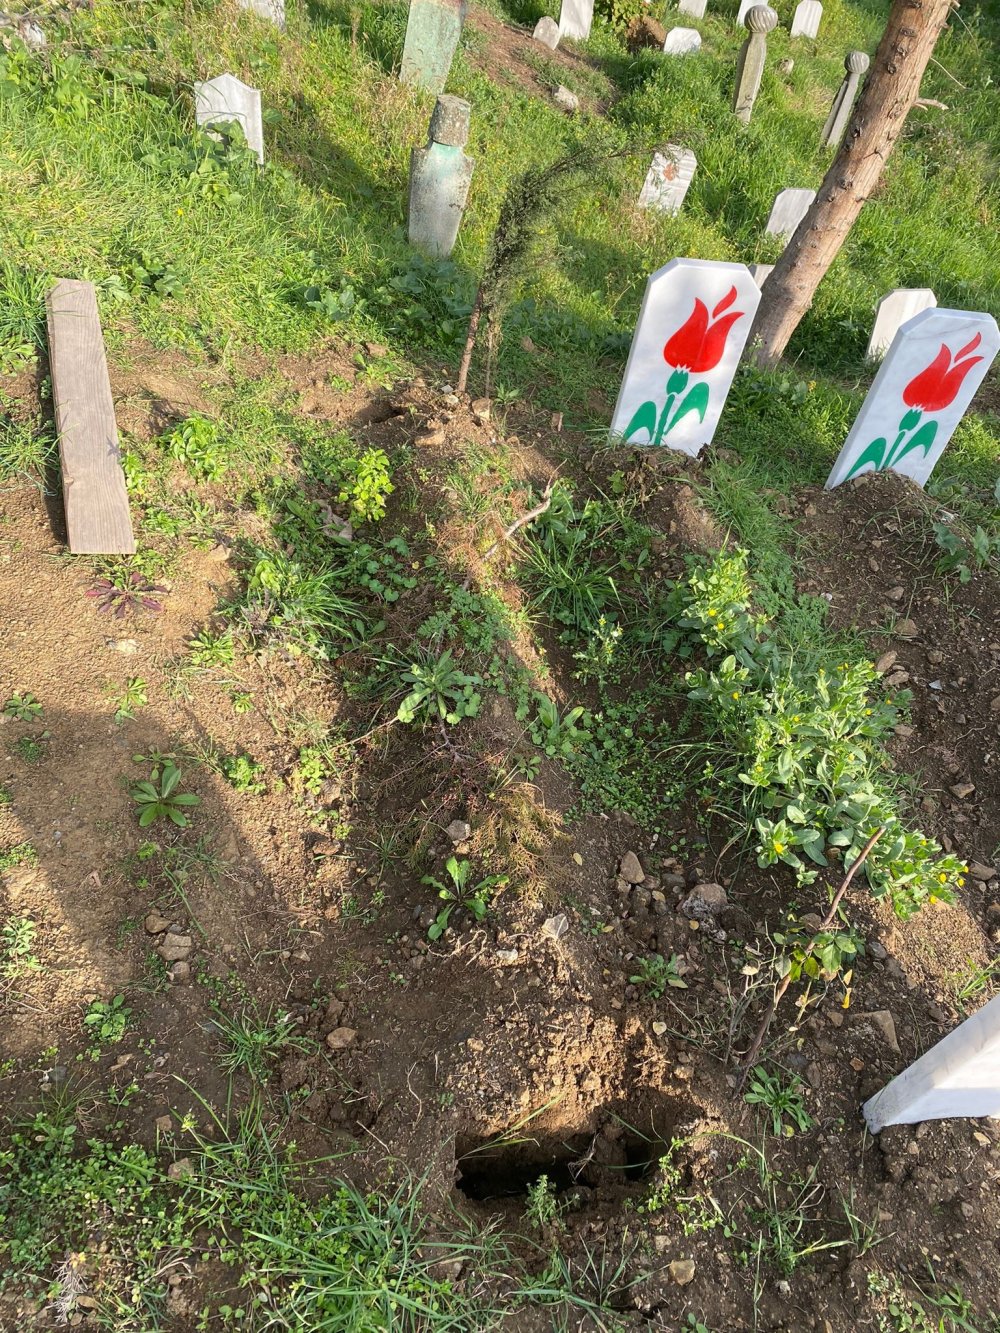 Trabzon'da mezar taşlarını çalan hırsız yakalandı